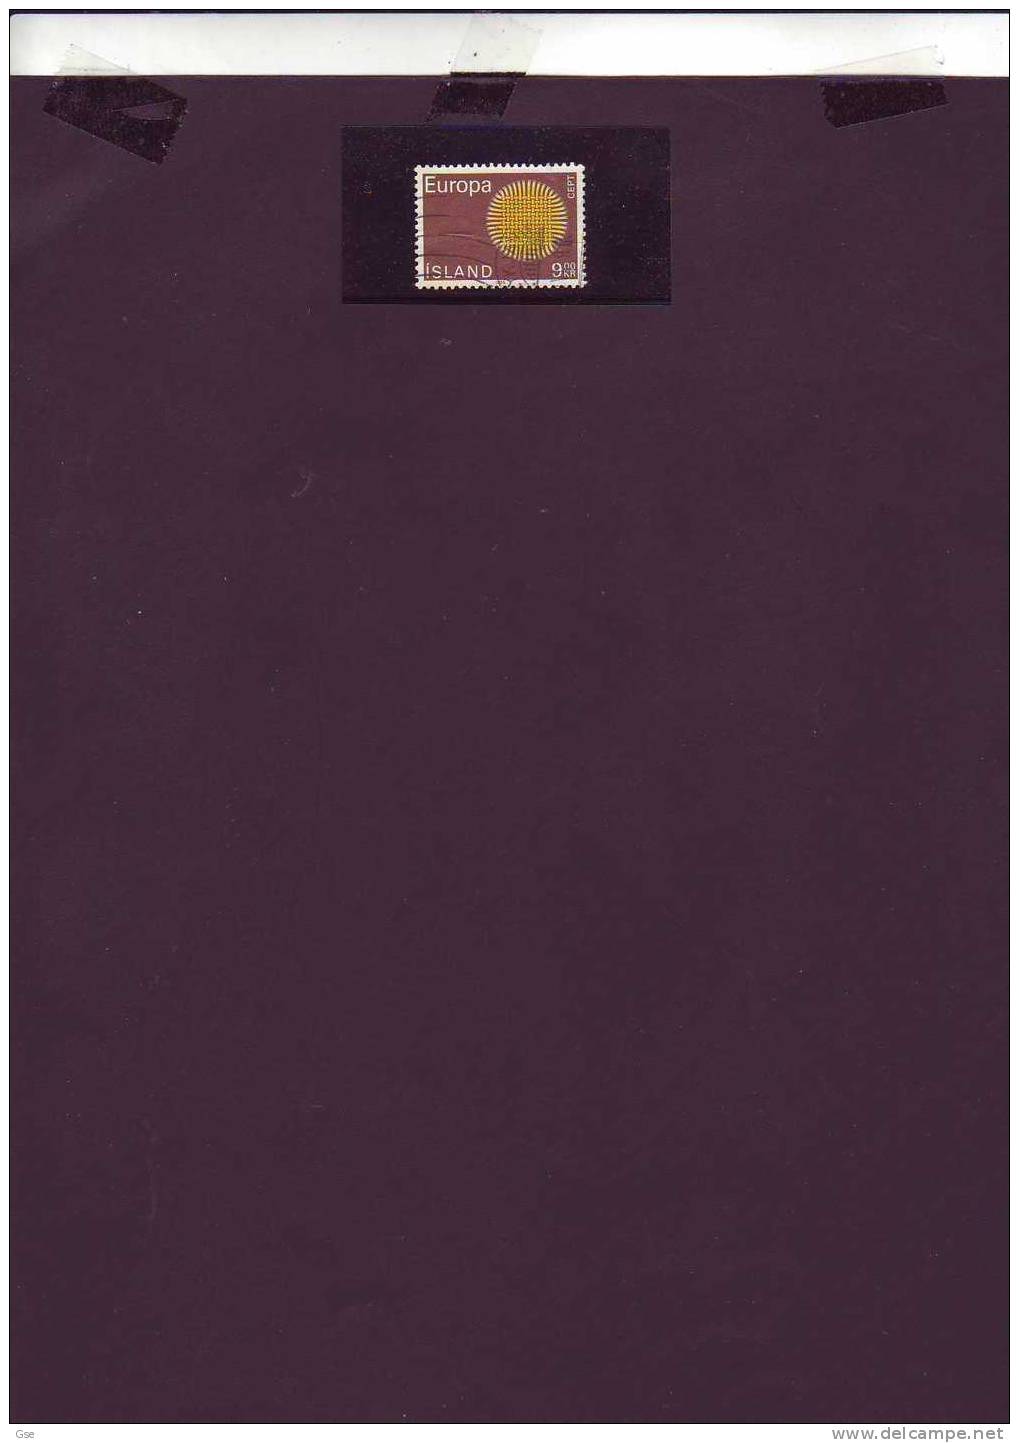 ISLANDA 1970  - Yvert  395°- Europa - Used Stamps